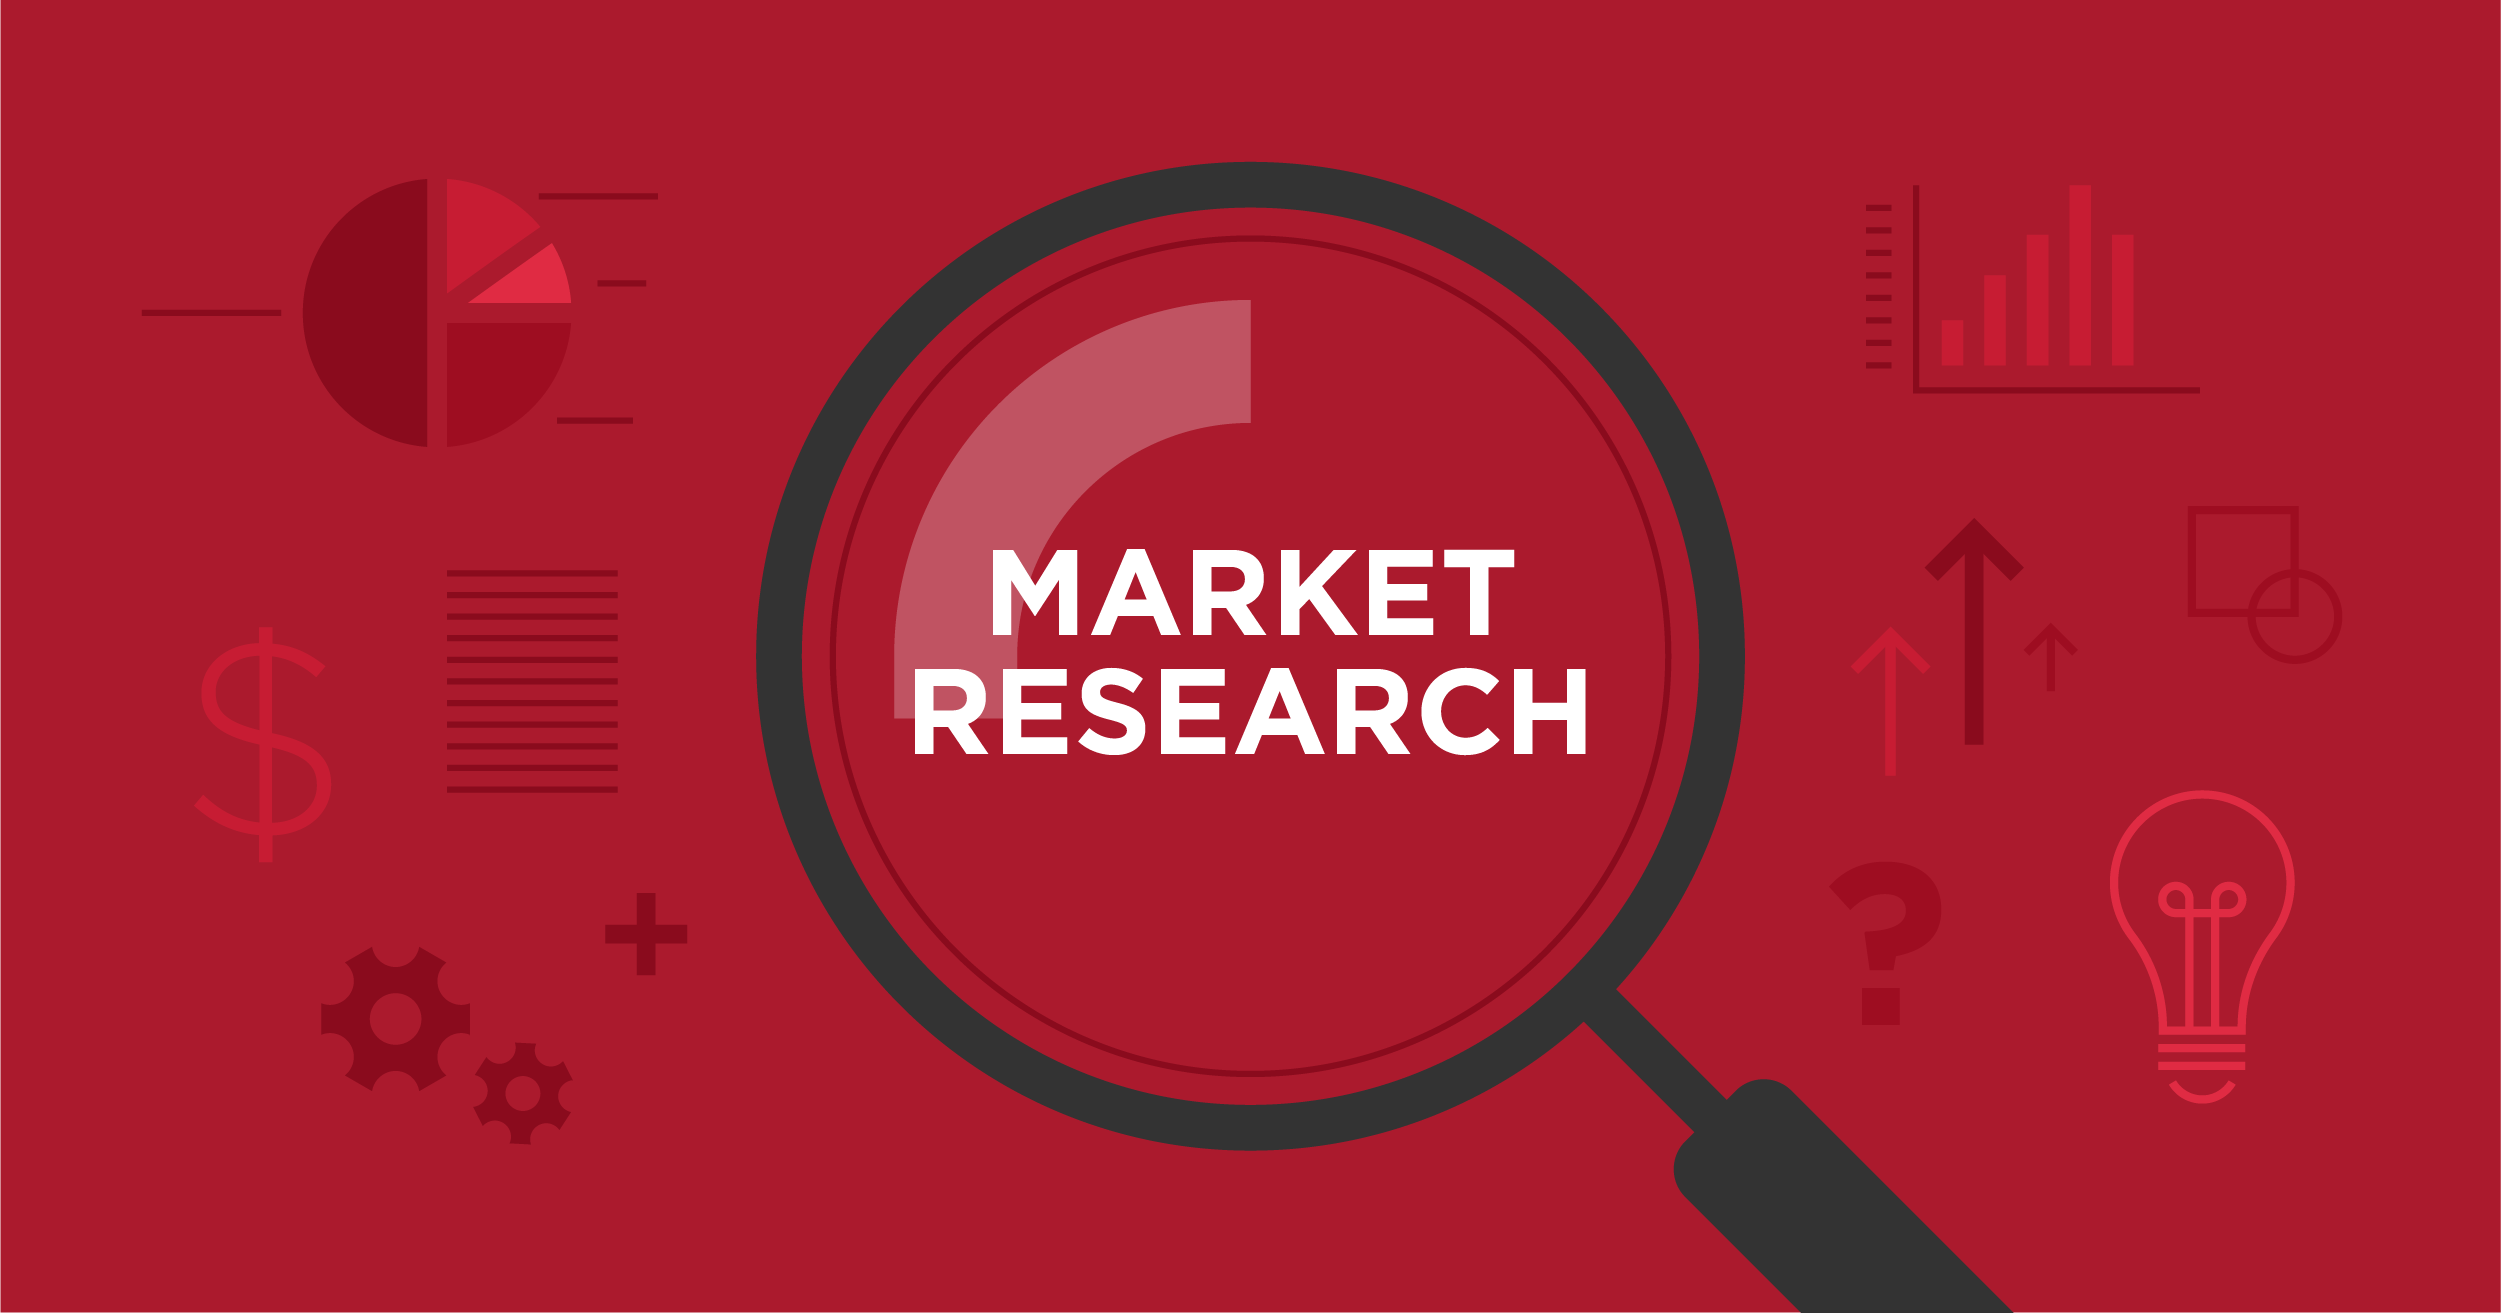 Market Research Vs. Market Survey